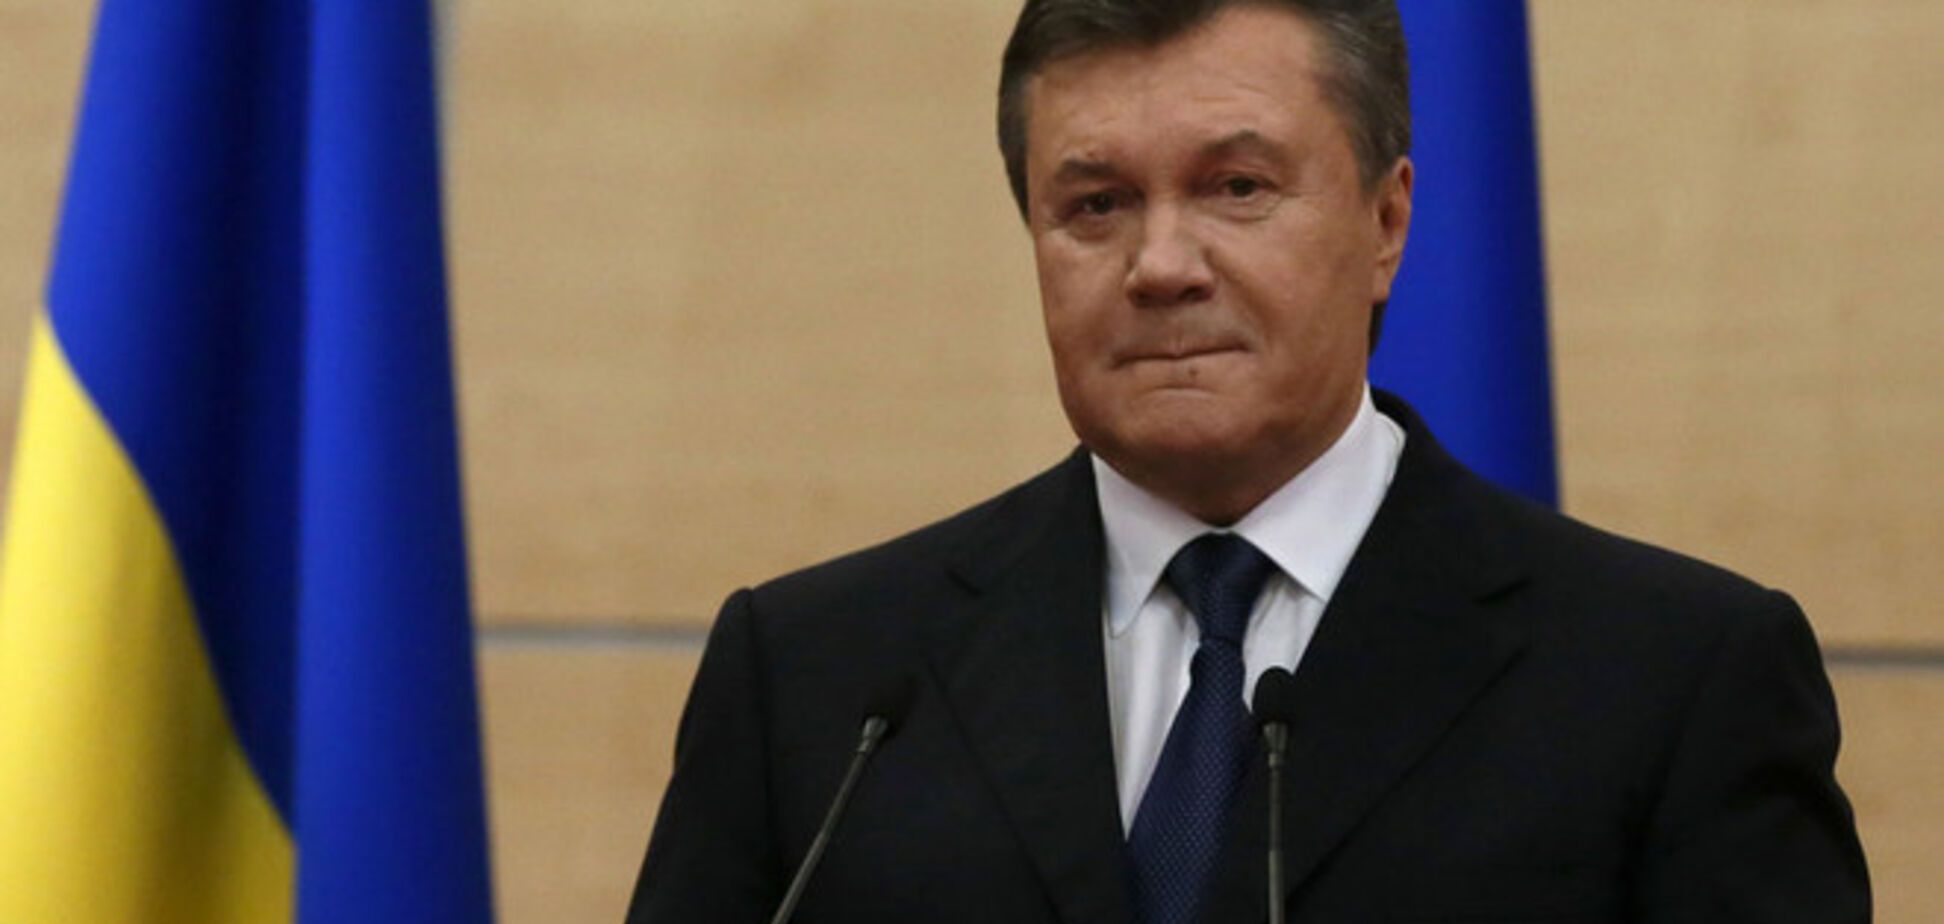 Кремль выставил украинским чиновникам счет за пребывание в РФ. Янукович уже оплатил - источник